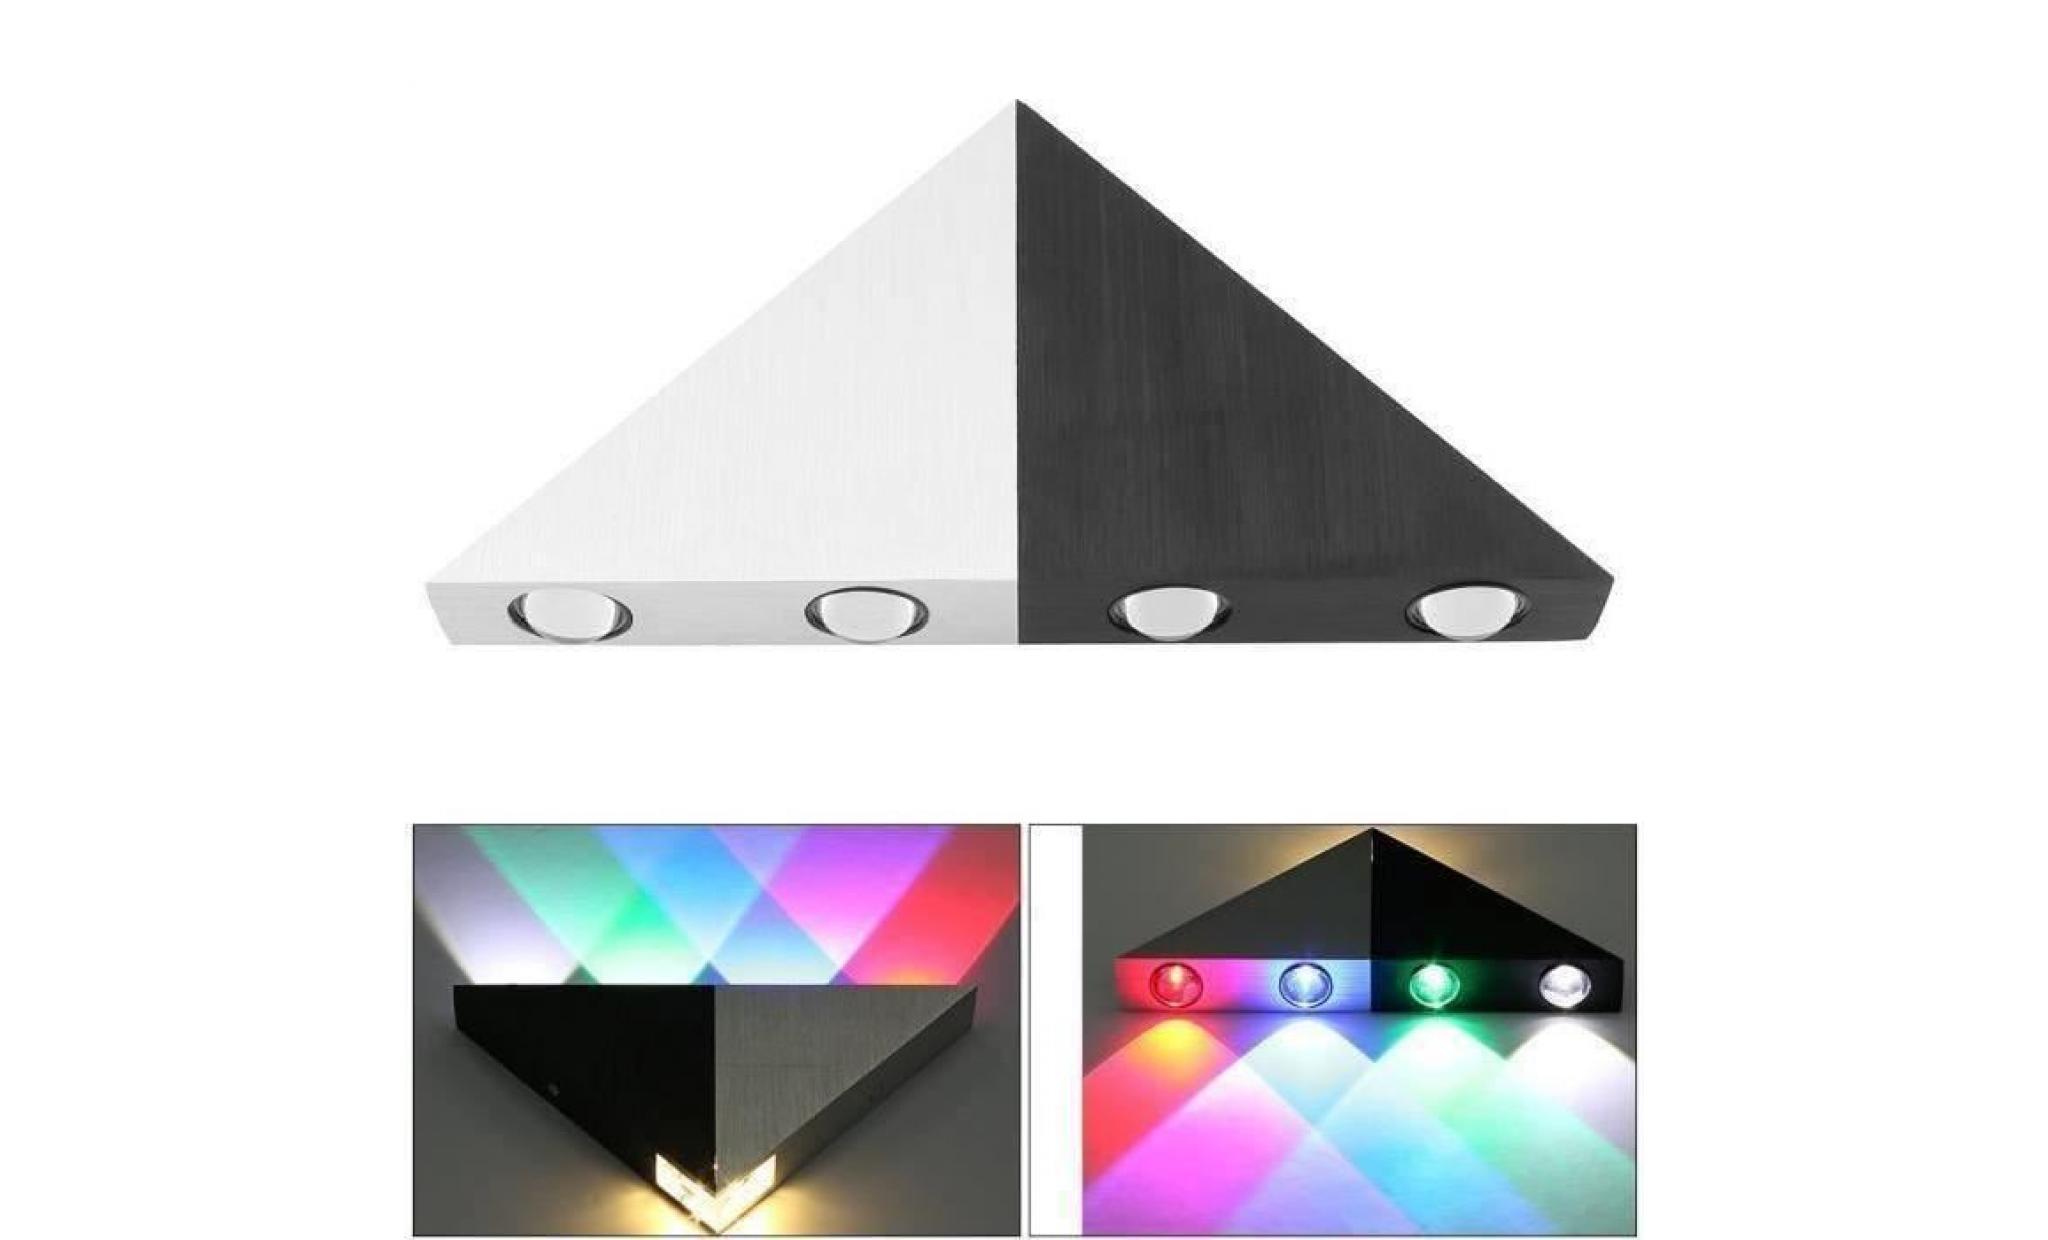 （multicolore）5w led applique mural triangle eclairage décoratif lampe design moderne lampe murale en aluminium pour chambre salon pas cher